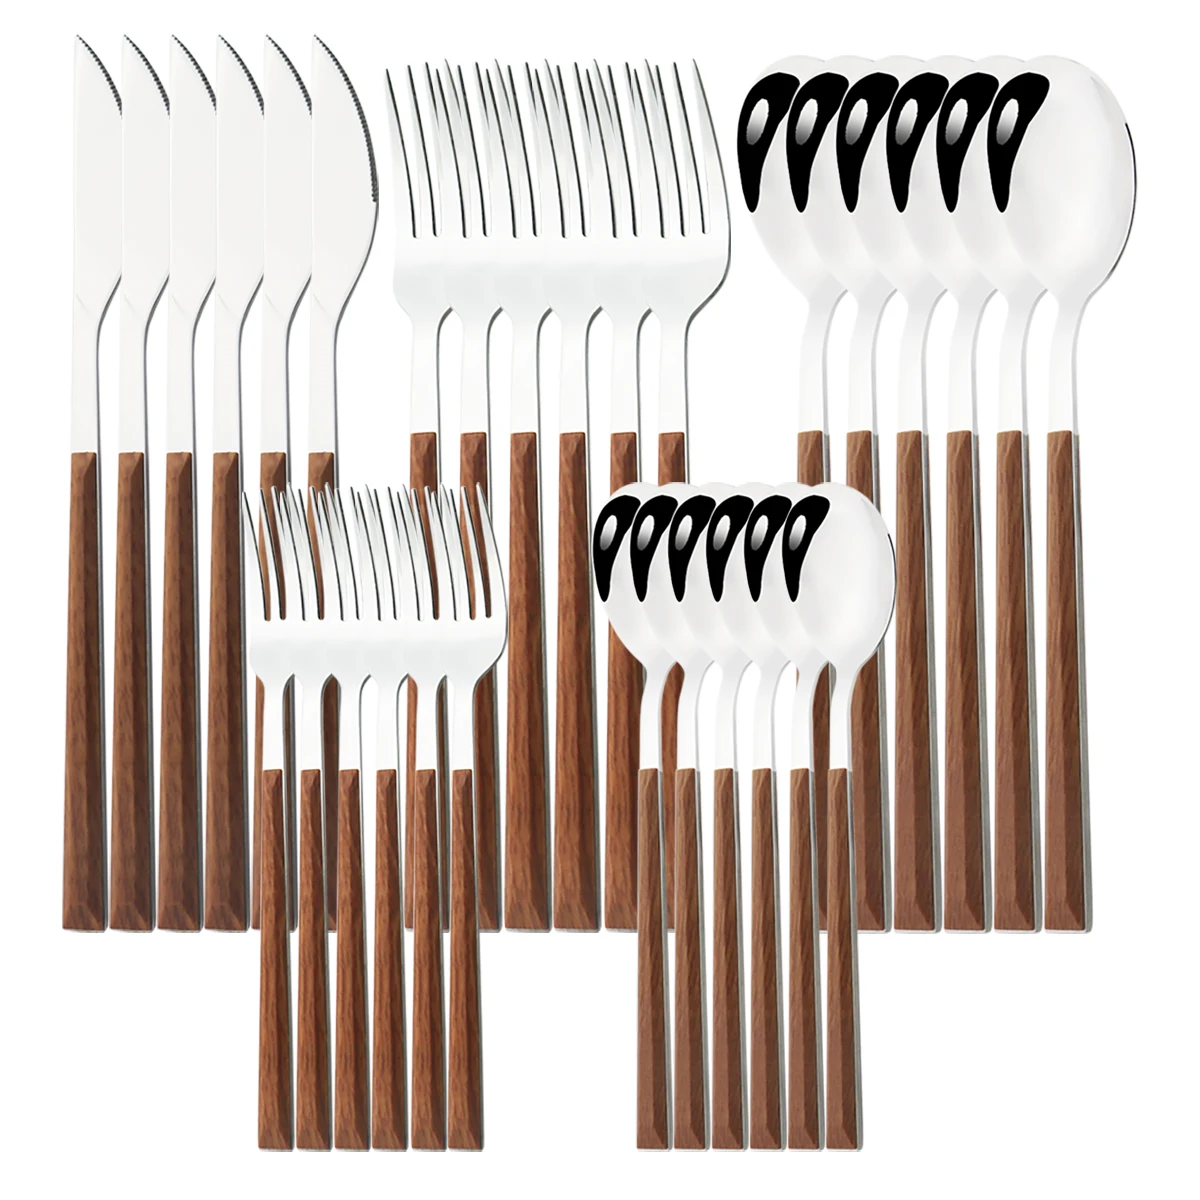 

24/30Pcs Imitation Wooden Handle Dinnerware Cutlery Set Stainless Steel Tableware Knife Fork Spoons Silverware Western Flatware